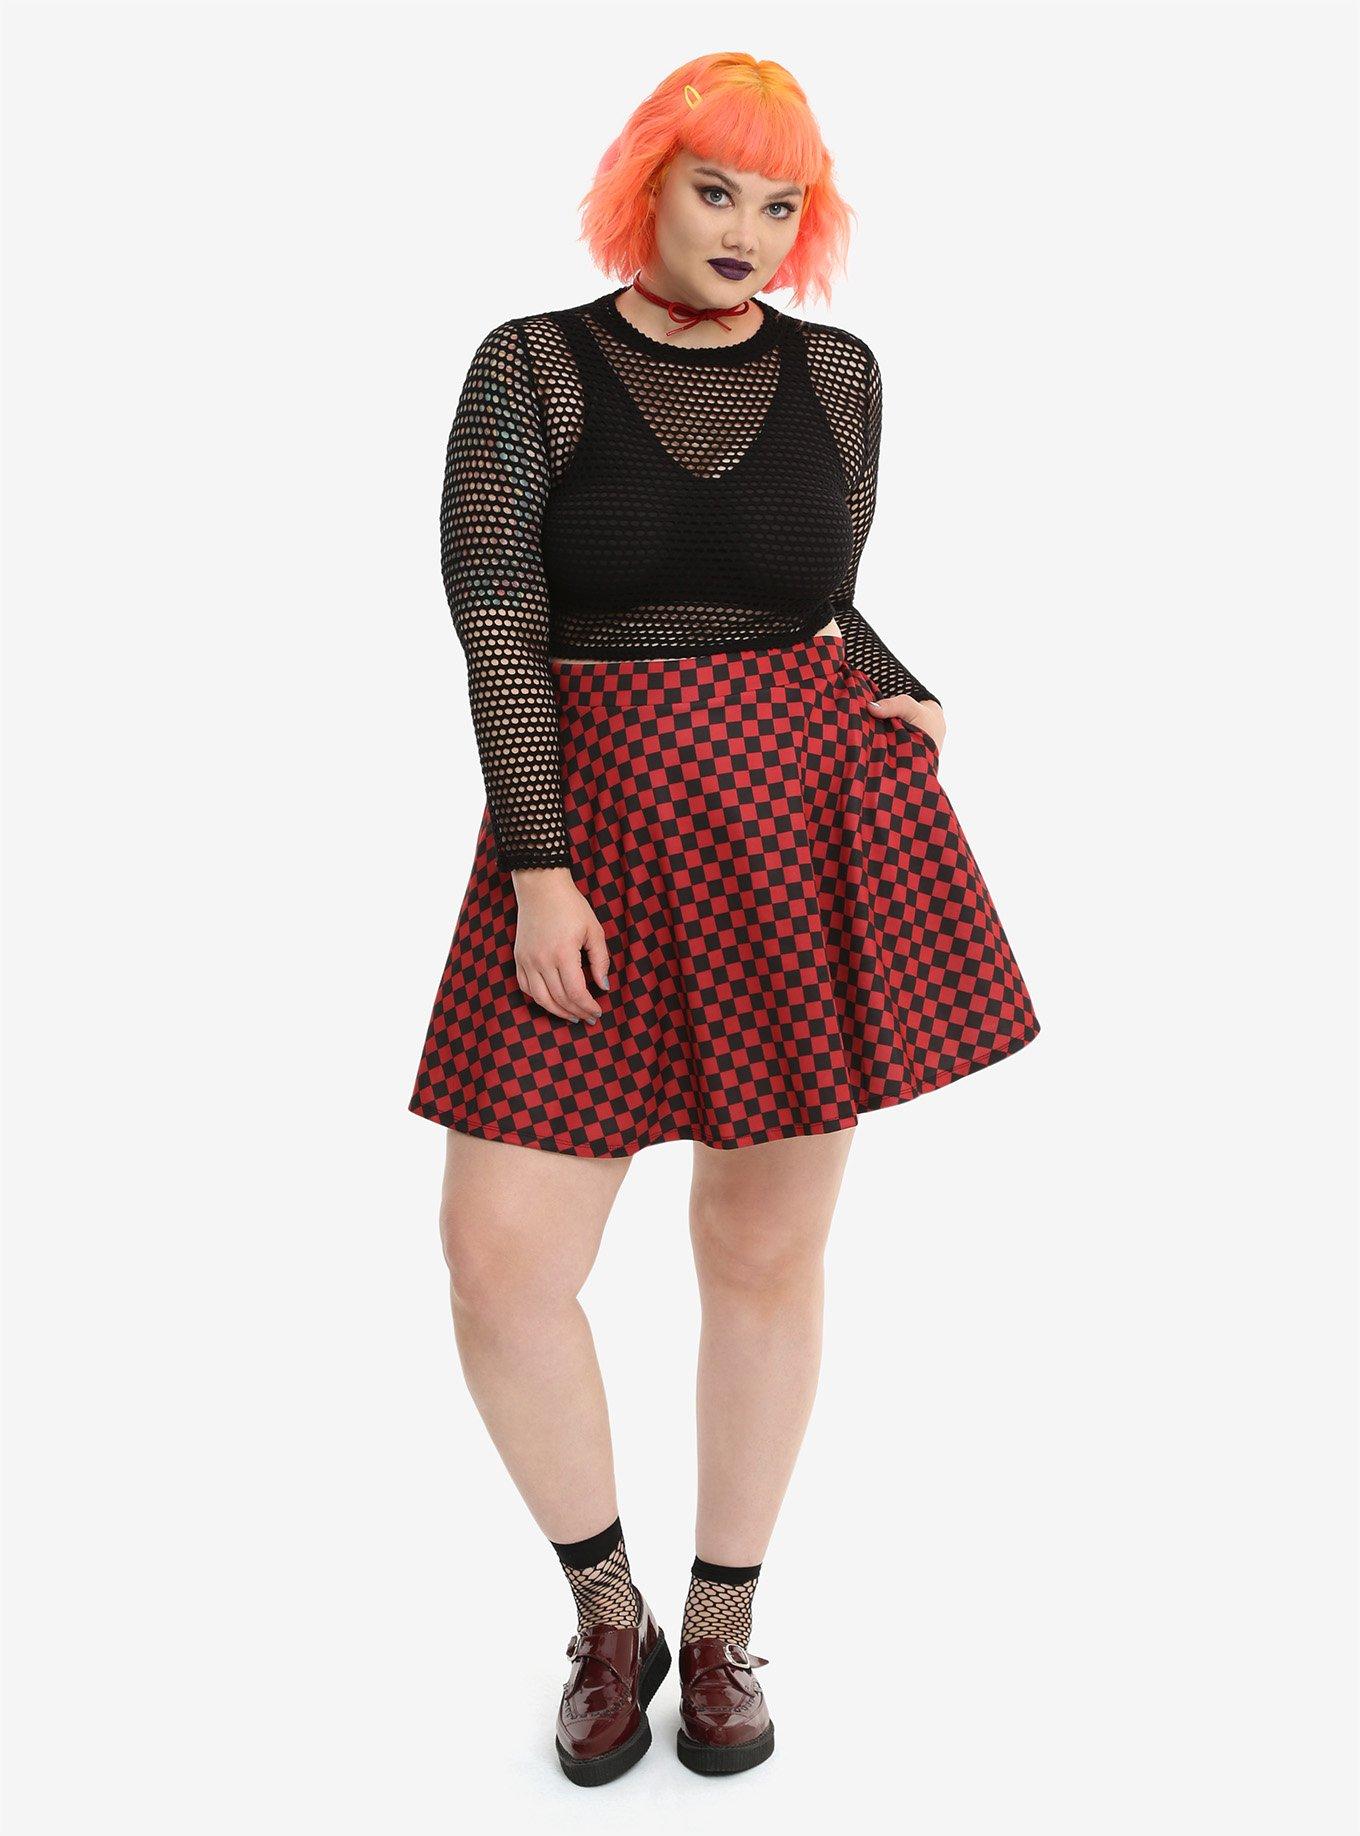 Red & Black Checkered Skirt Plus Size, , alternate